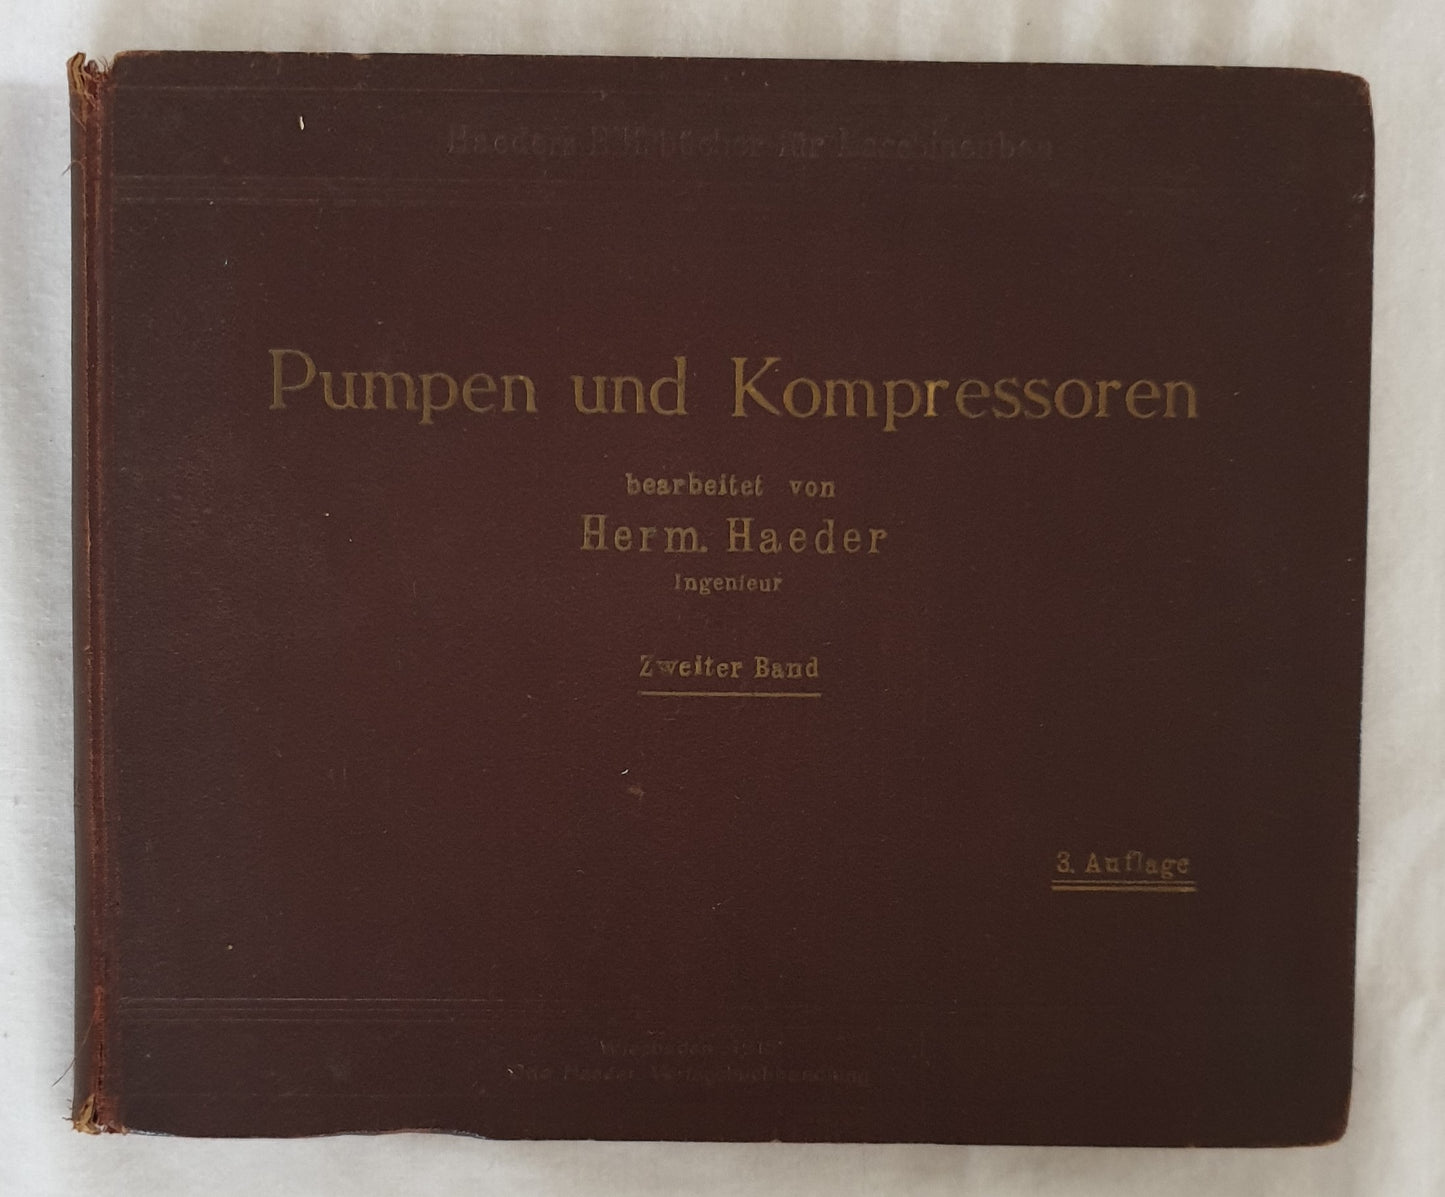 Pumpen und Kompressoren by H. Haeder